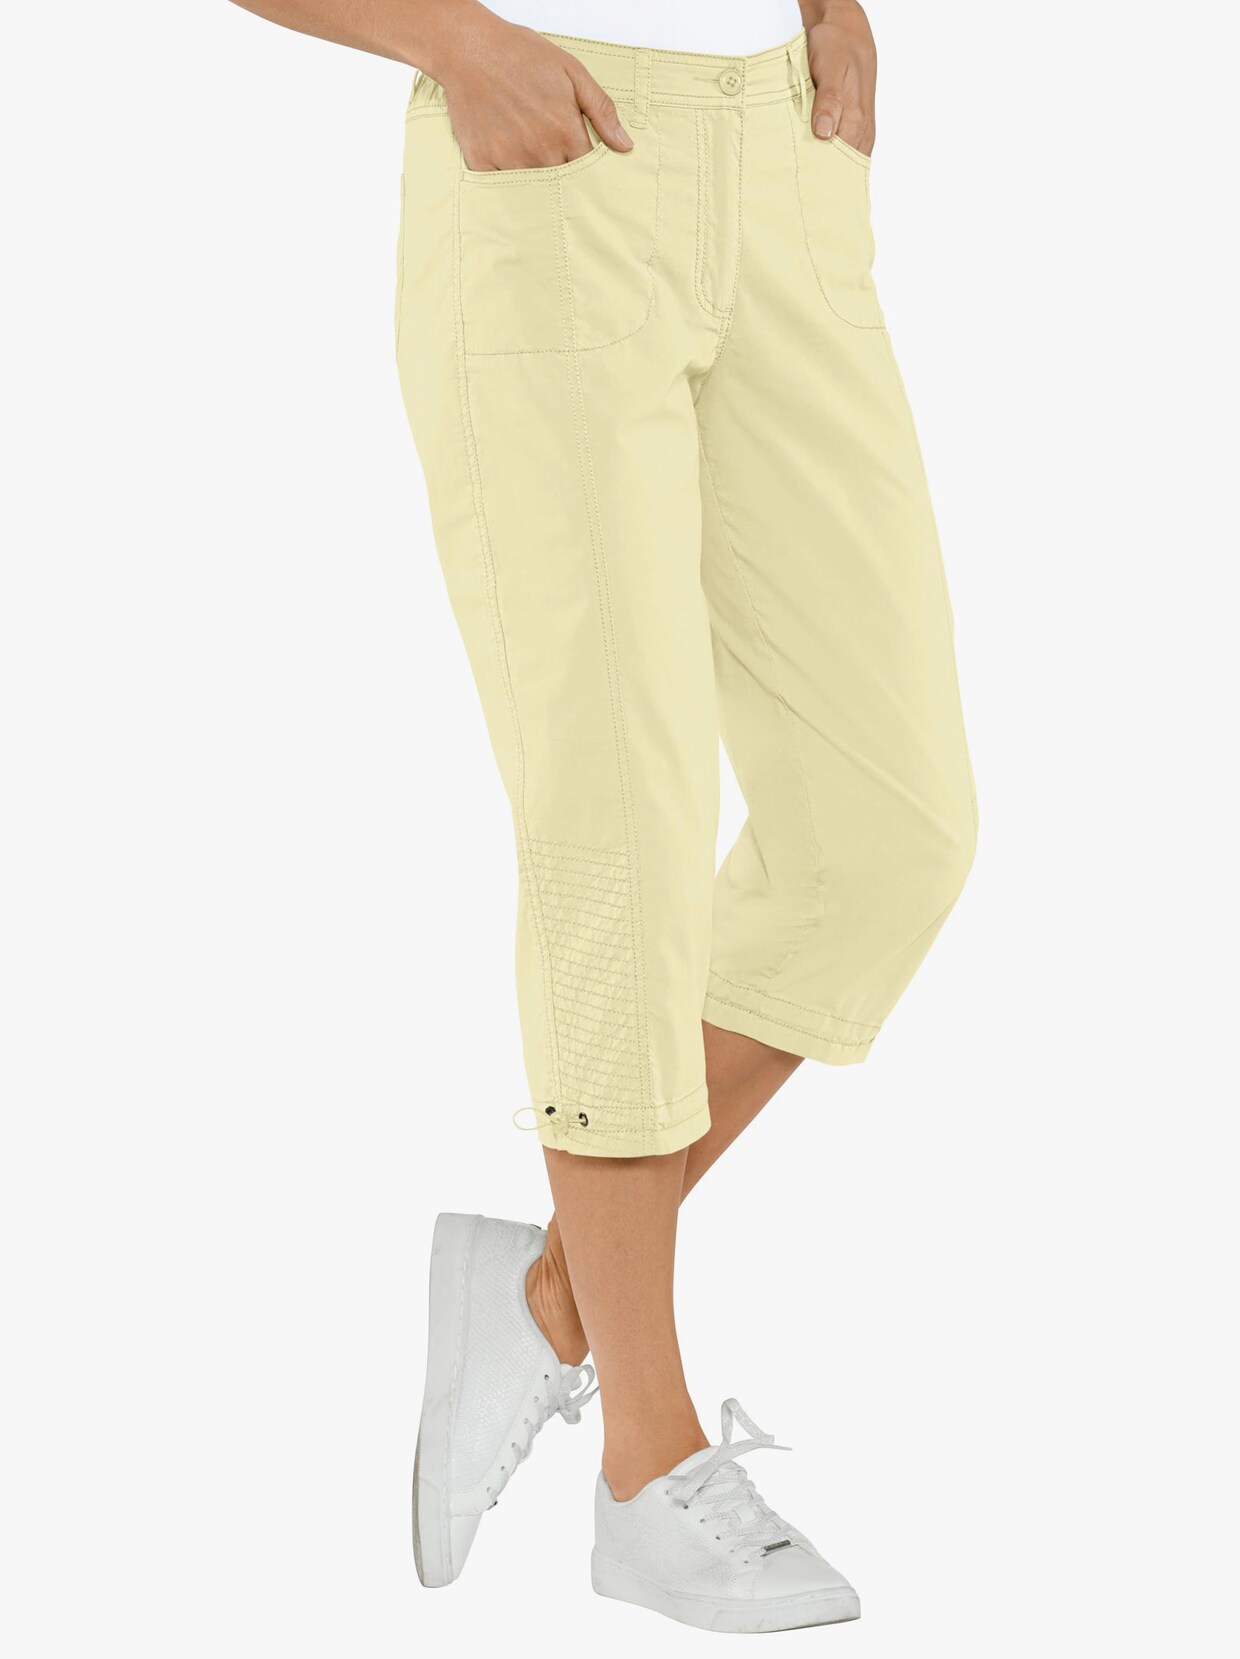 Capri kalhoty - žlutá